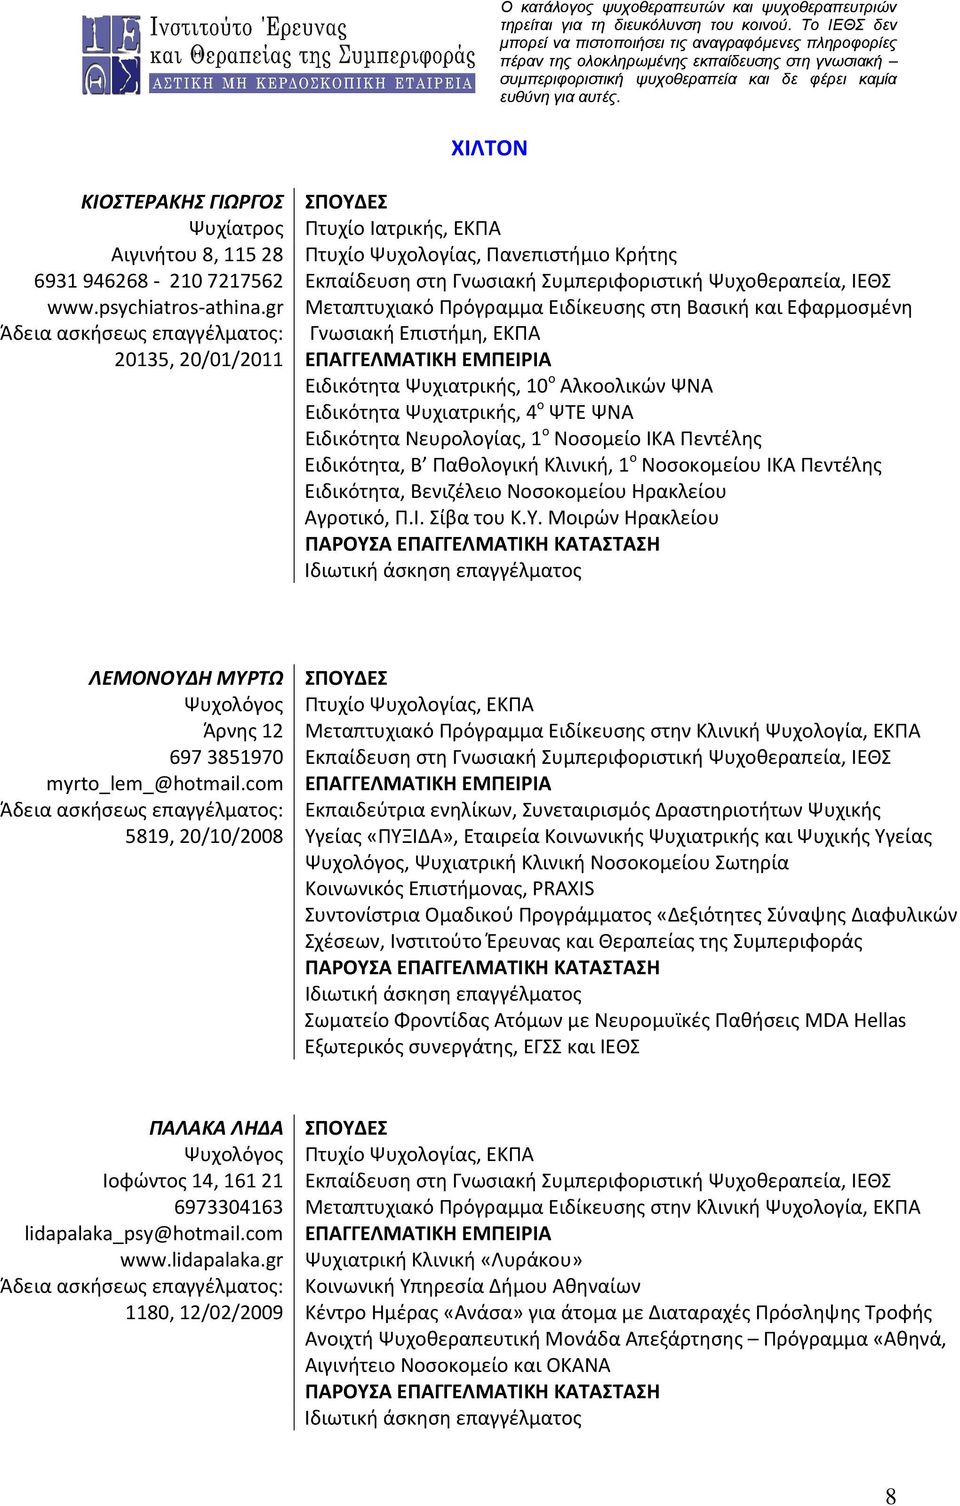 gr Μεταπτυχιακό Πρόγραμμα Ειδίκευσης στη Βασική και Εφαρμοσμένη Άδεια ασκήσεως επαγγέλματος: Γνωσιακή Επιστήμη, ΕΚΠΑ 20135, 20/01/2011 ΕΠΑΓΓΕΛΜΑΤΙΚΗ ΕΜΠΕΙΡΙΑ Ειδικότητα Ψυχιατρικής, 10 ο Αλκοολικών